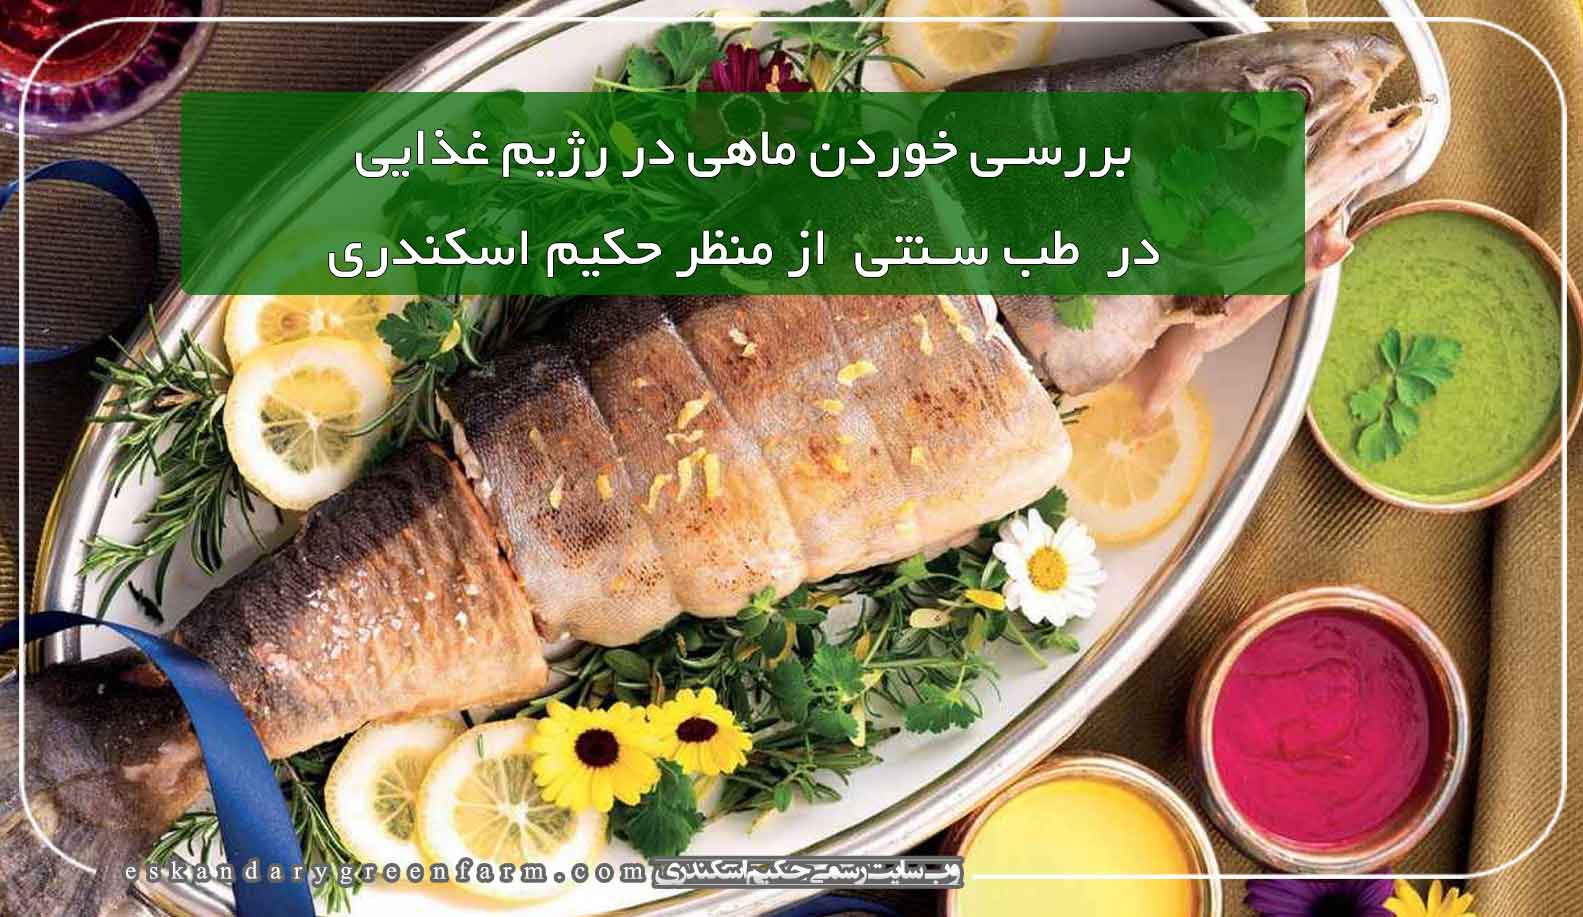 بررسی خوردن ماهی در رژیم غذایی در طب سنتی